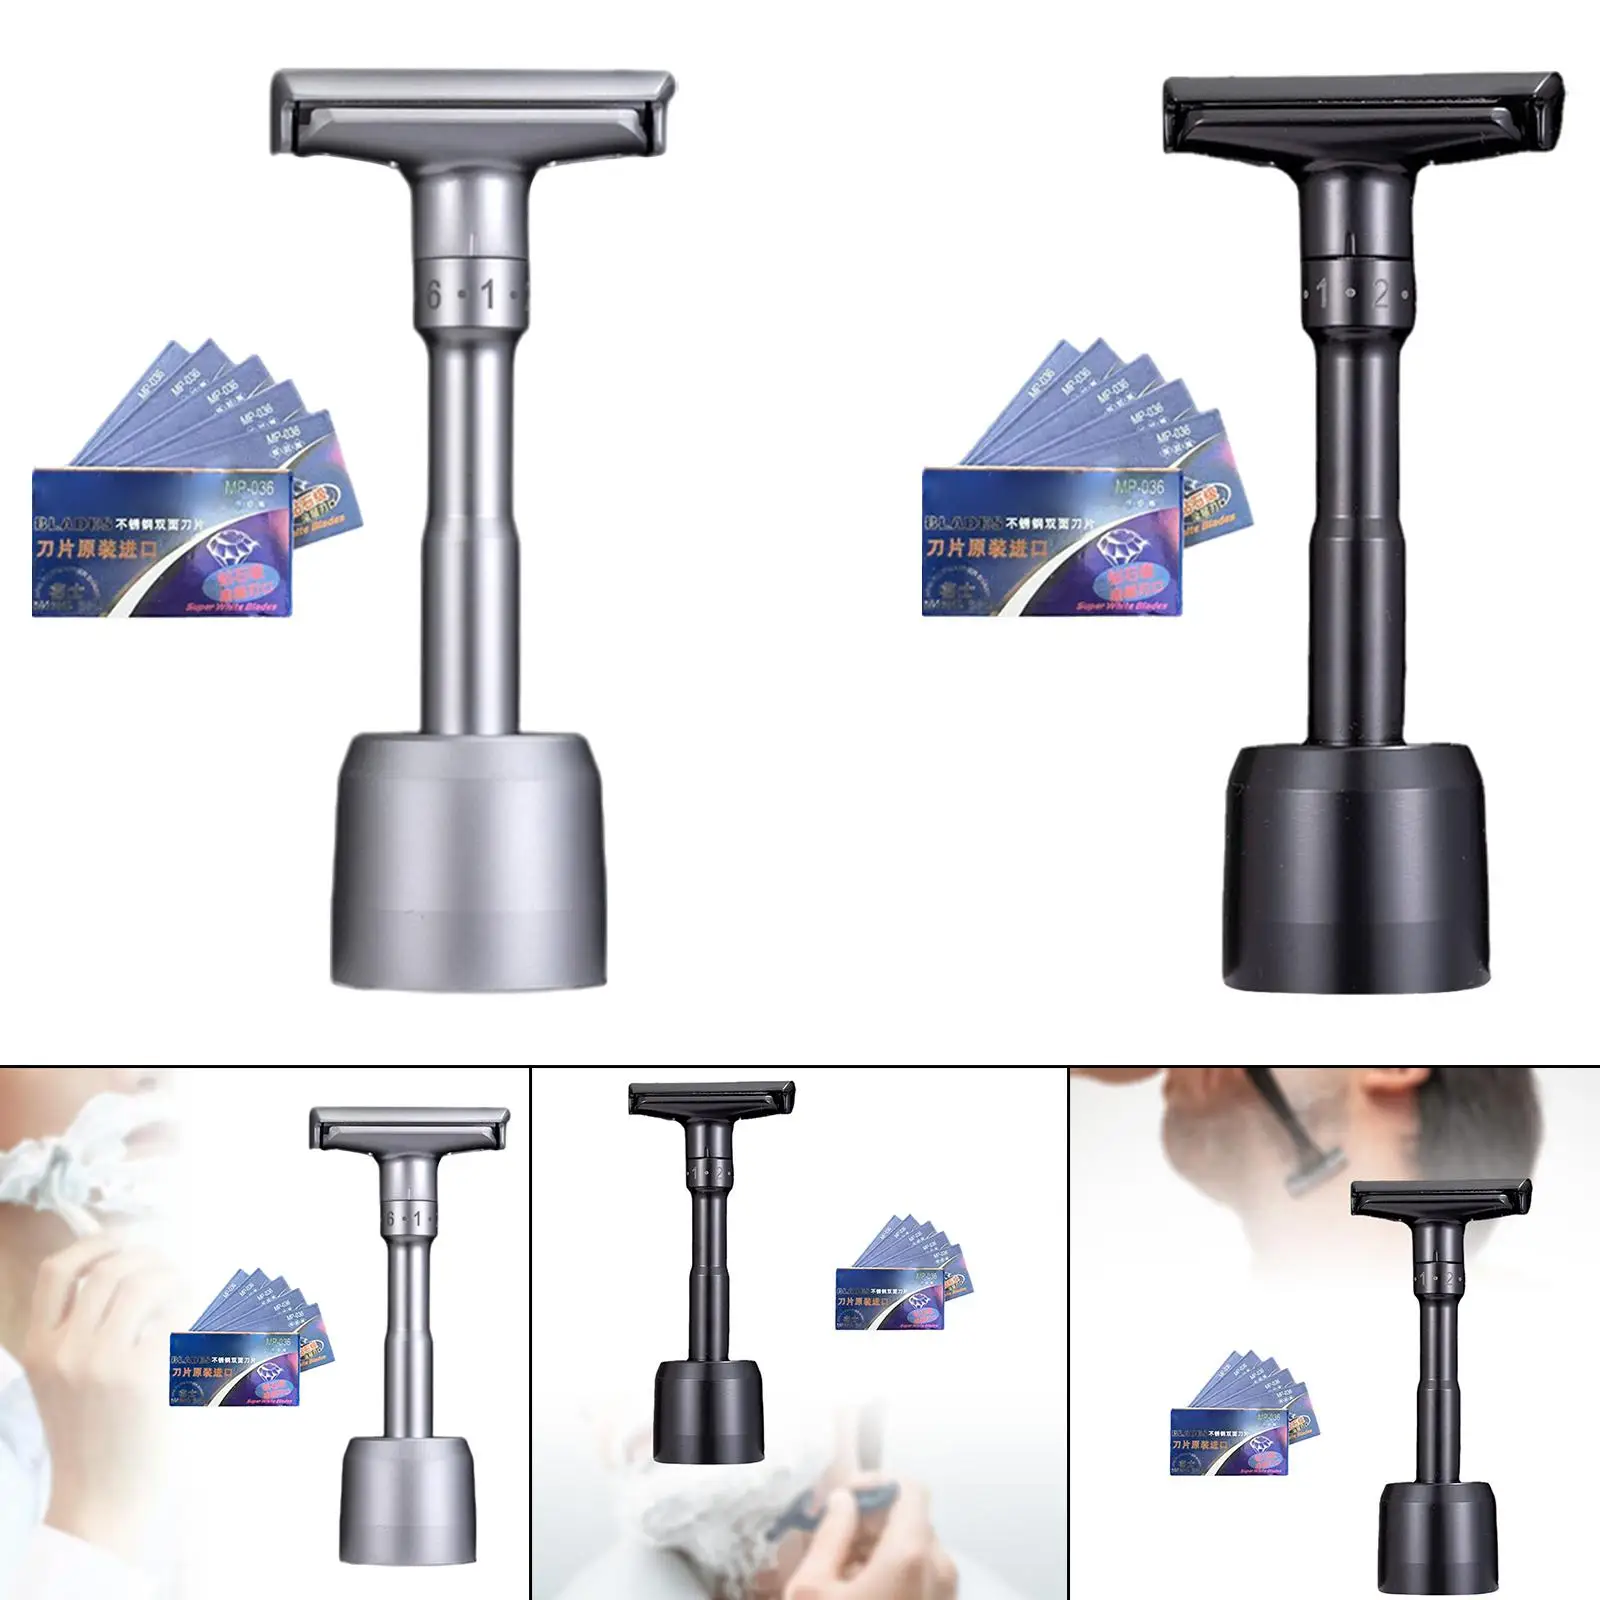 Adjustable Double Edge Safety Razor Wet Shaving Shaver for Barber Shop